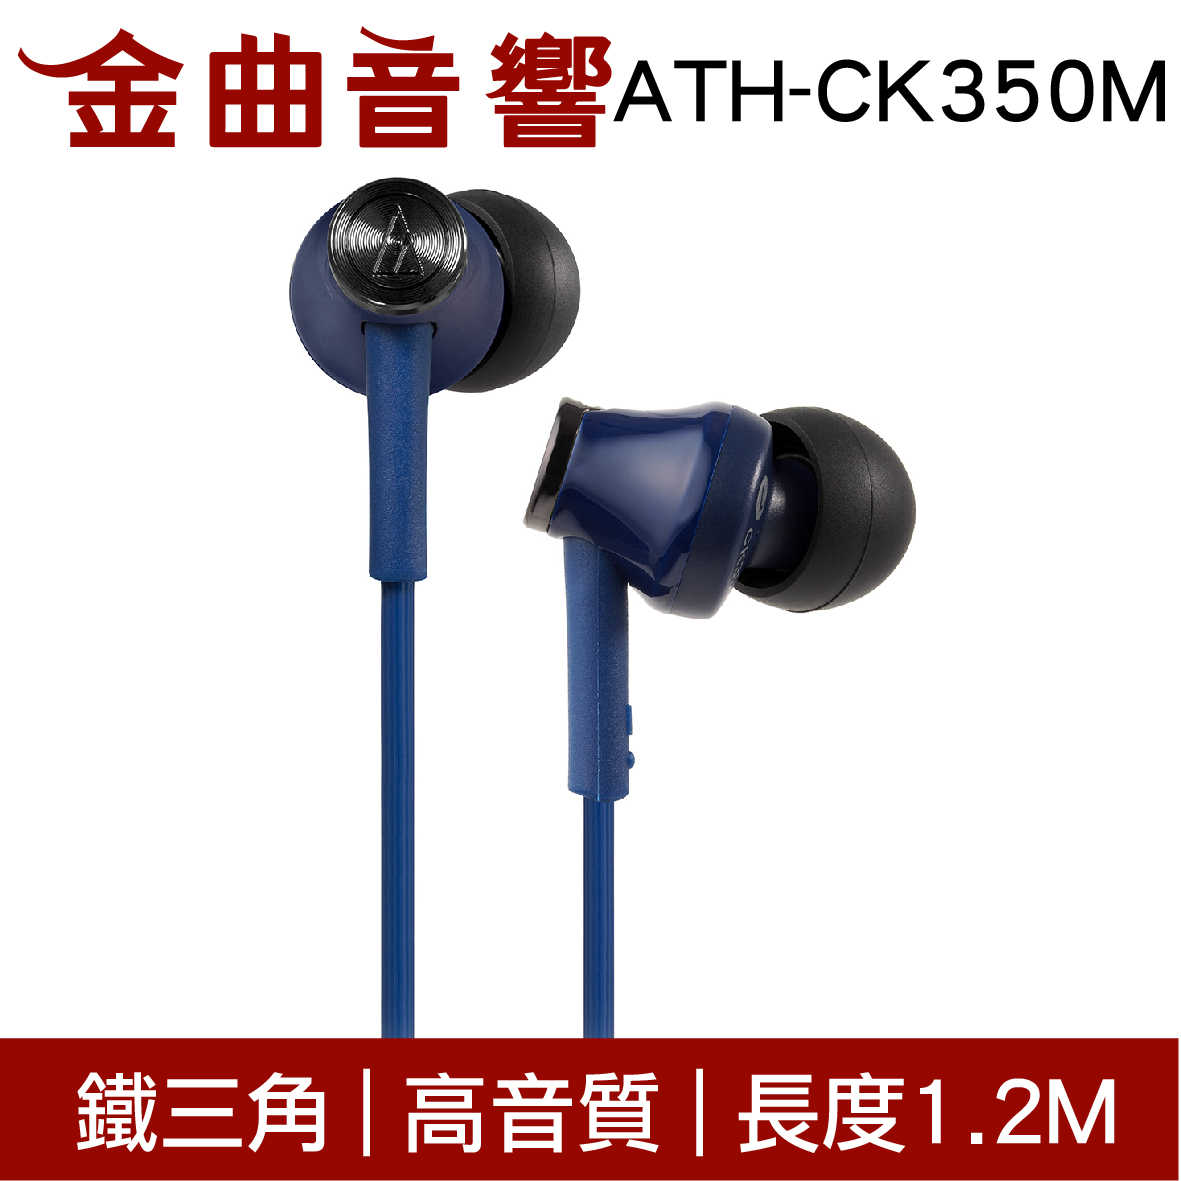 鐵三角 ATH-CK350M 米色 高音質耳道式耳機 | 金曲音響